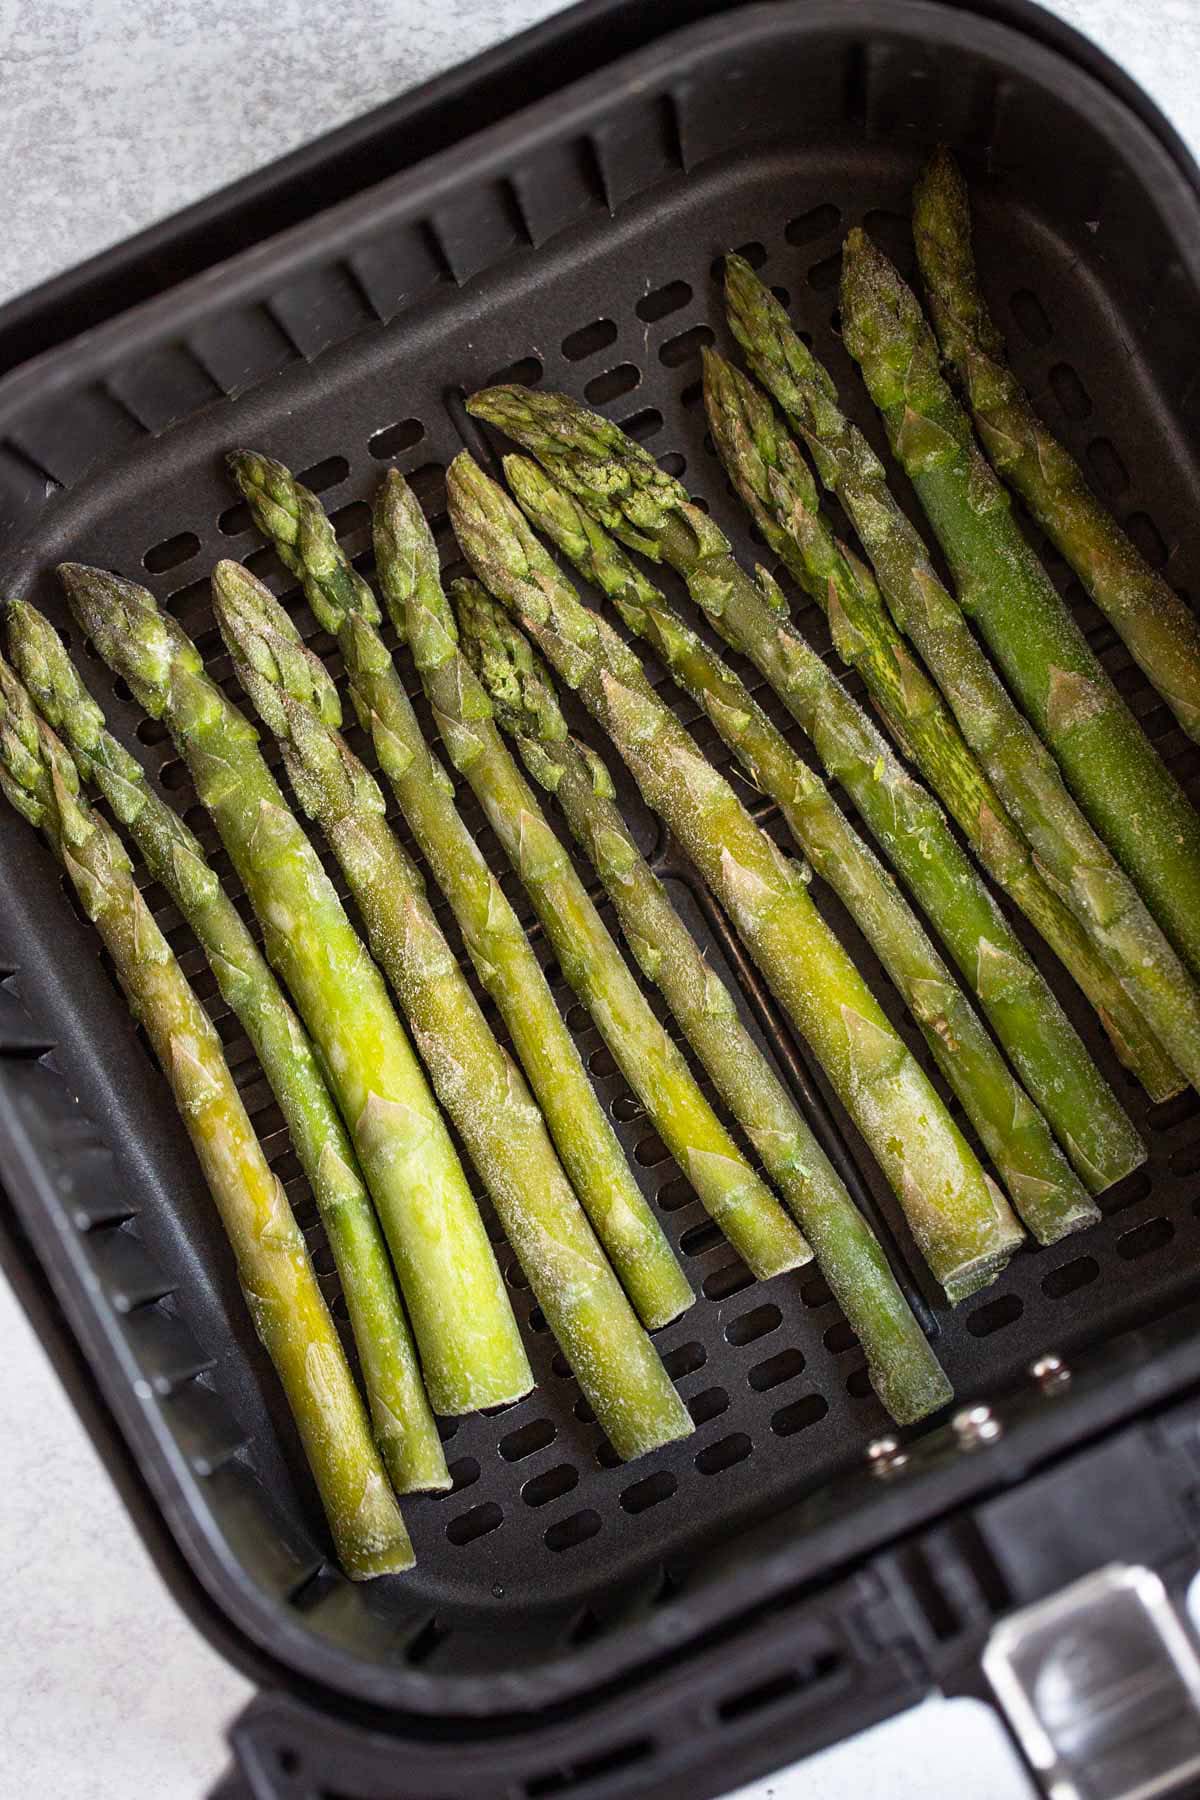 Frozen asparagus in air fryer basket.